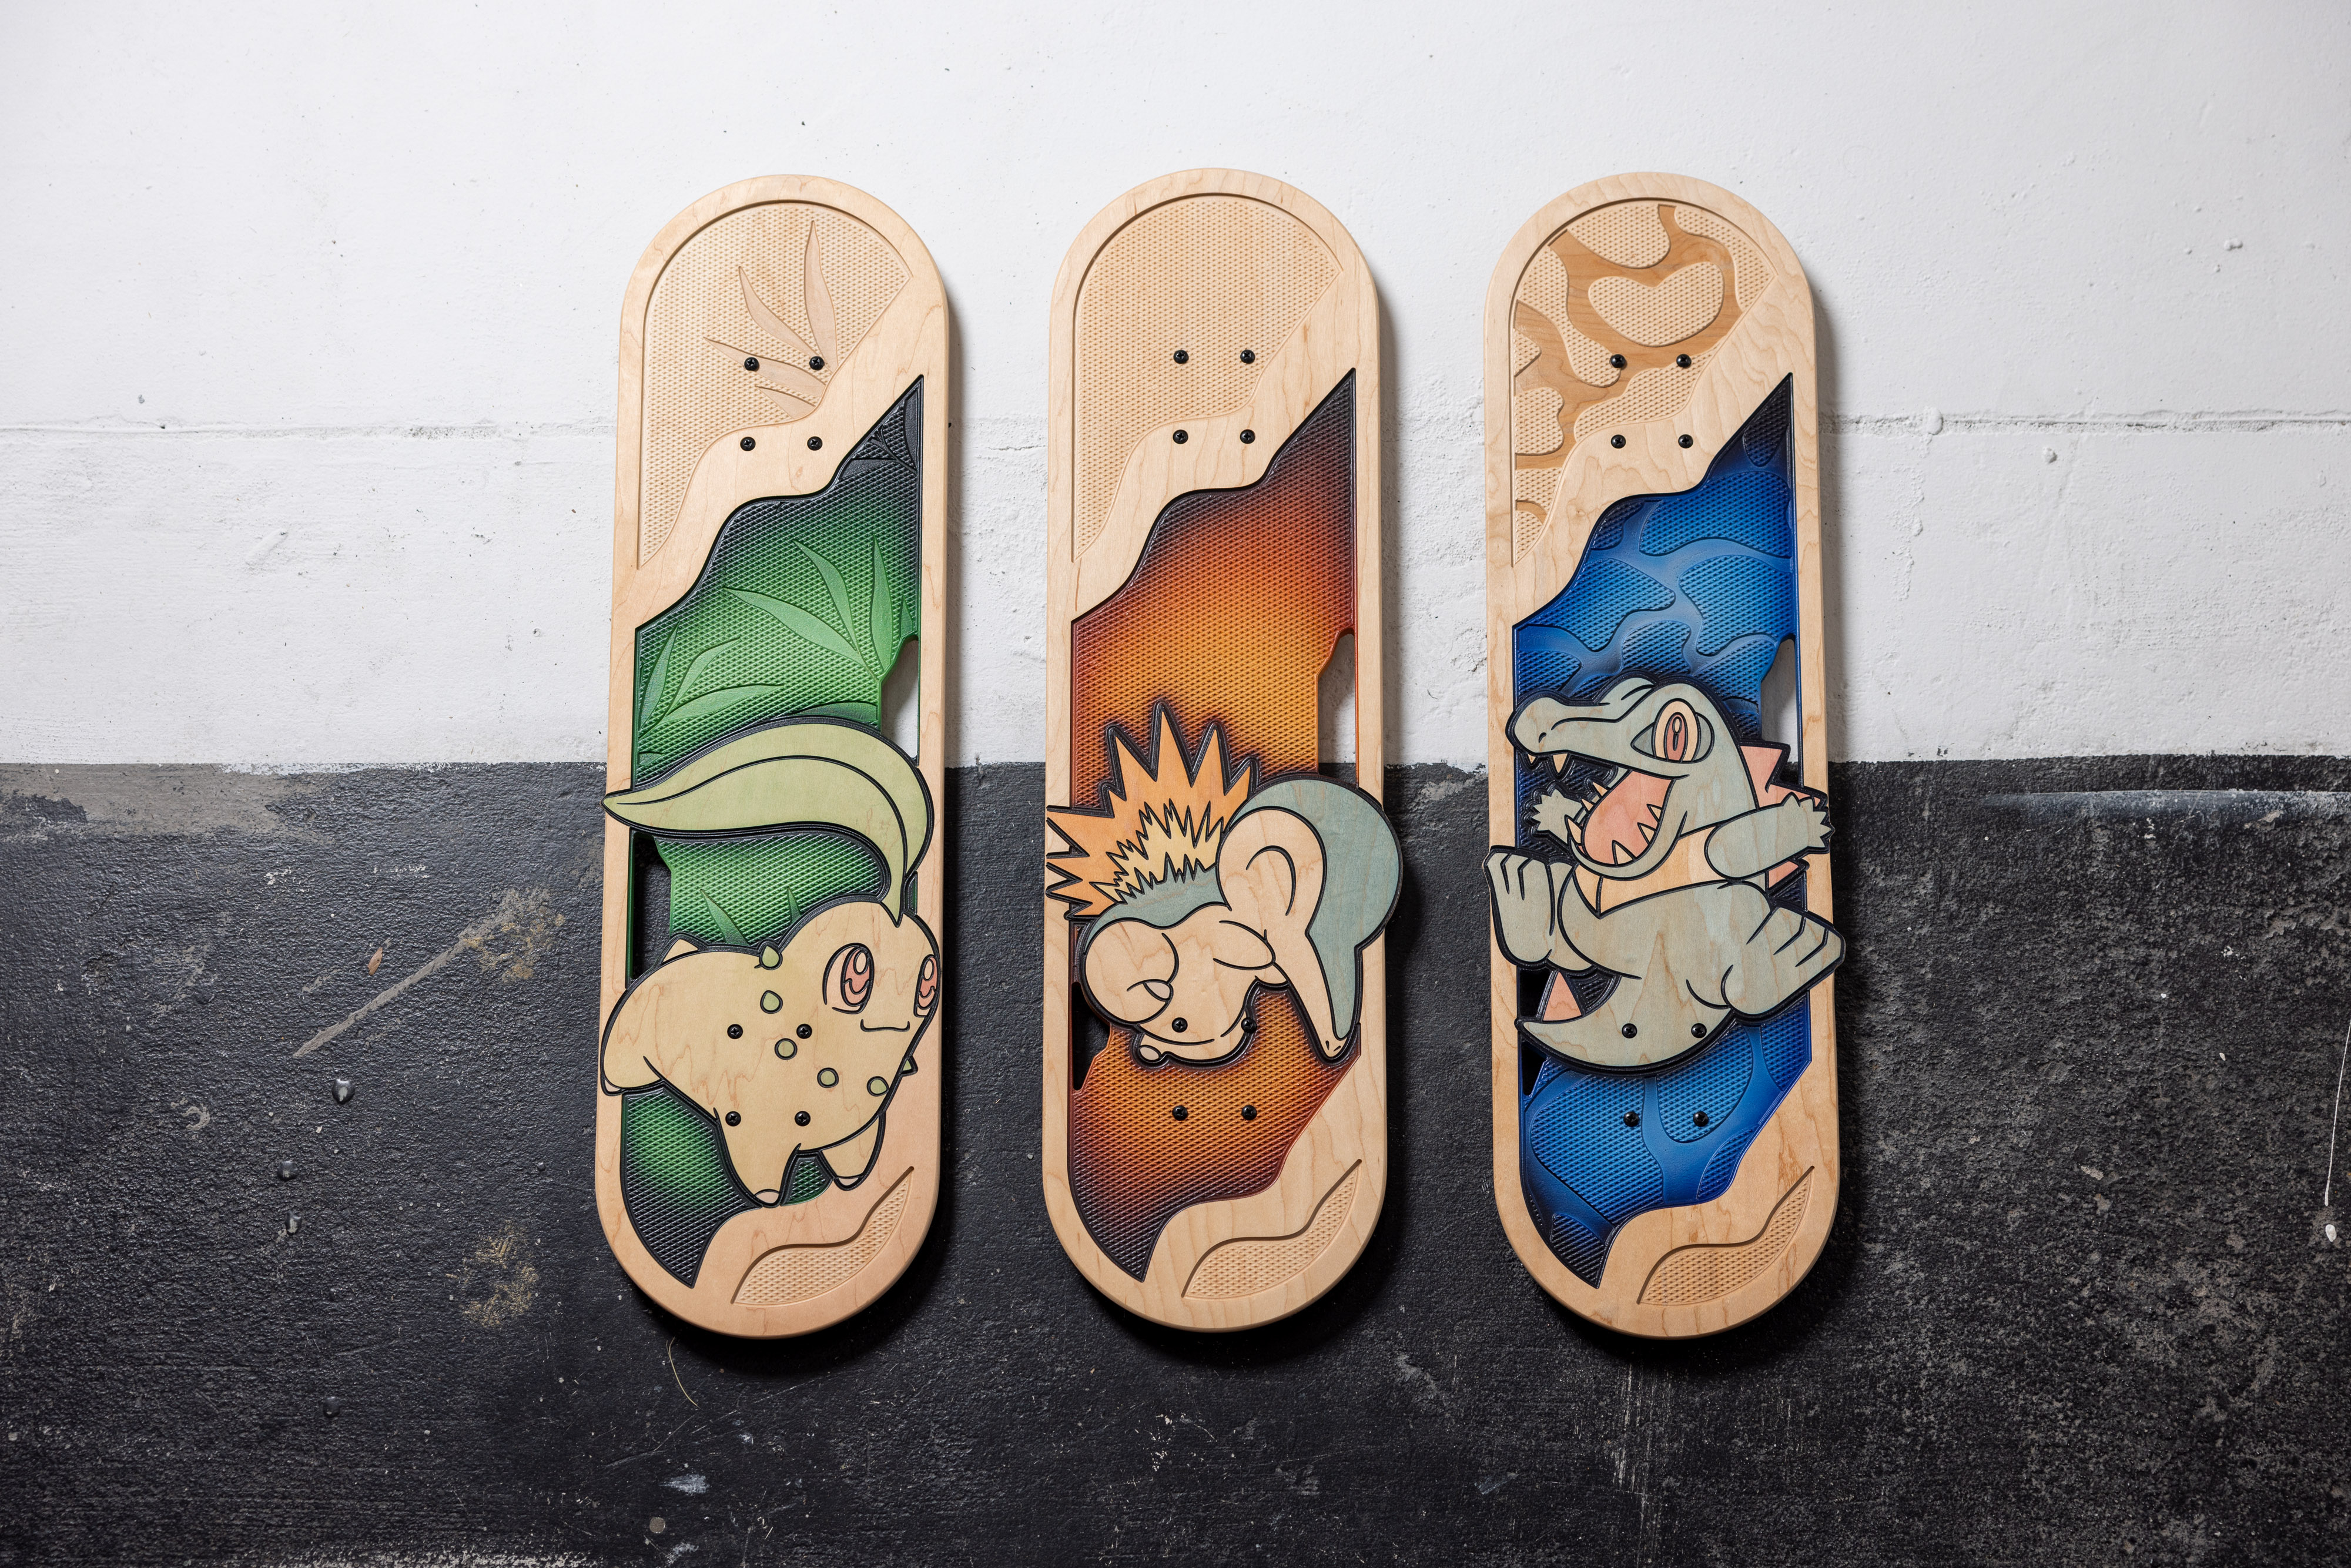 Johto starter themed Pokémon Skateboards